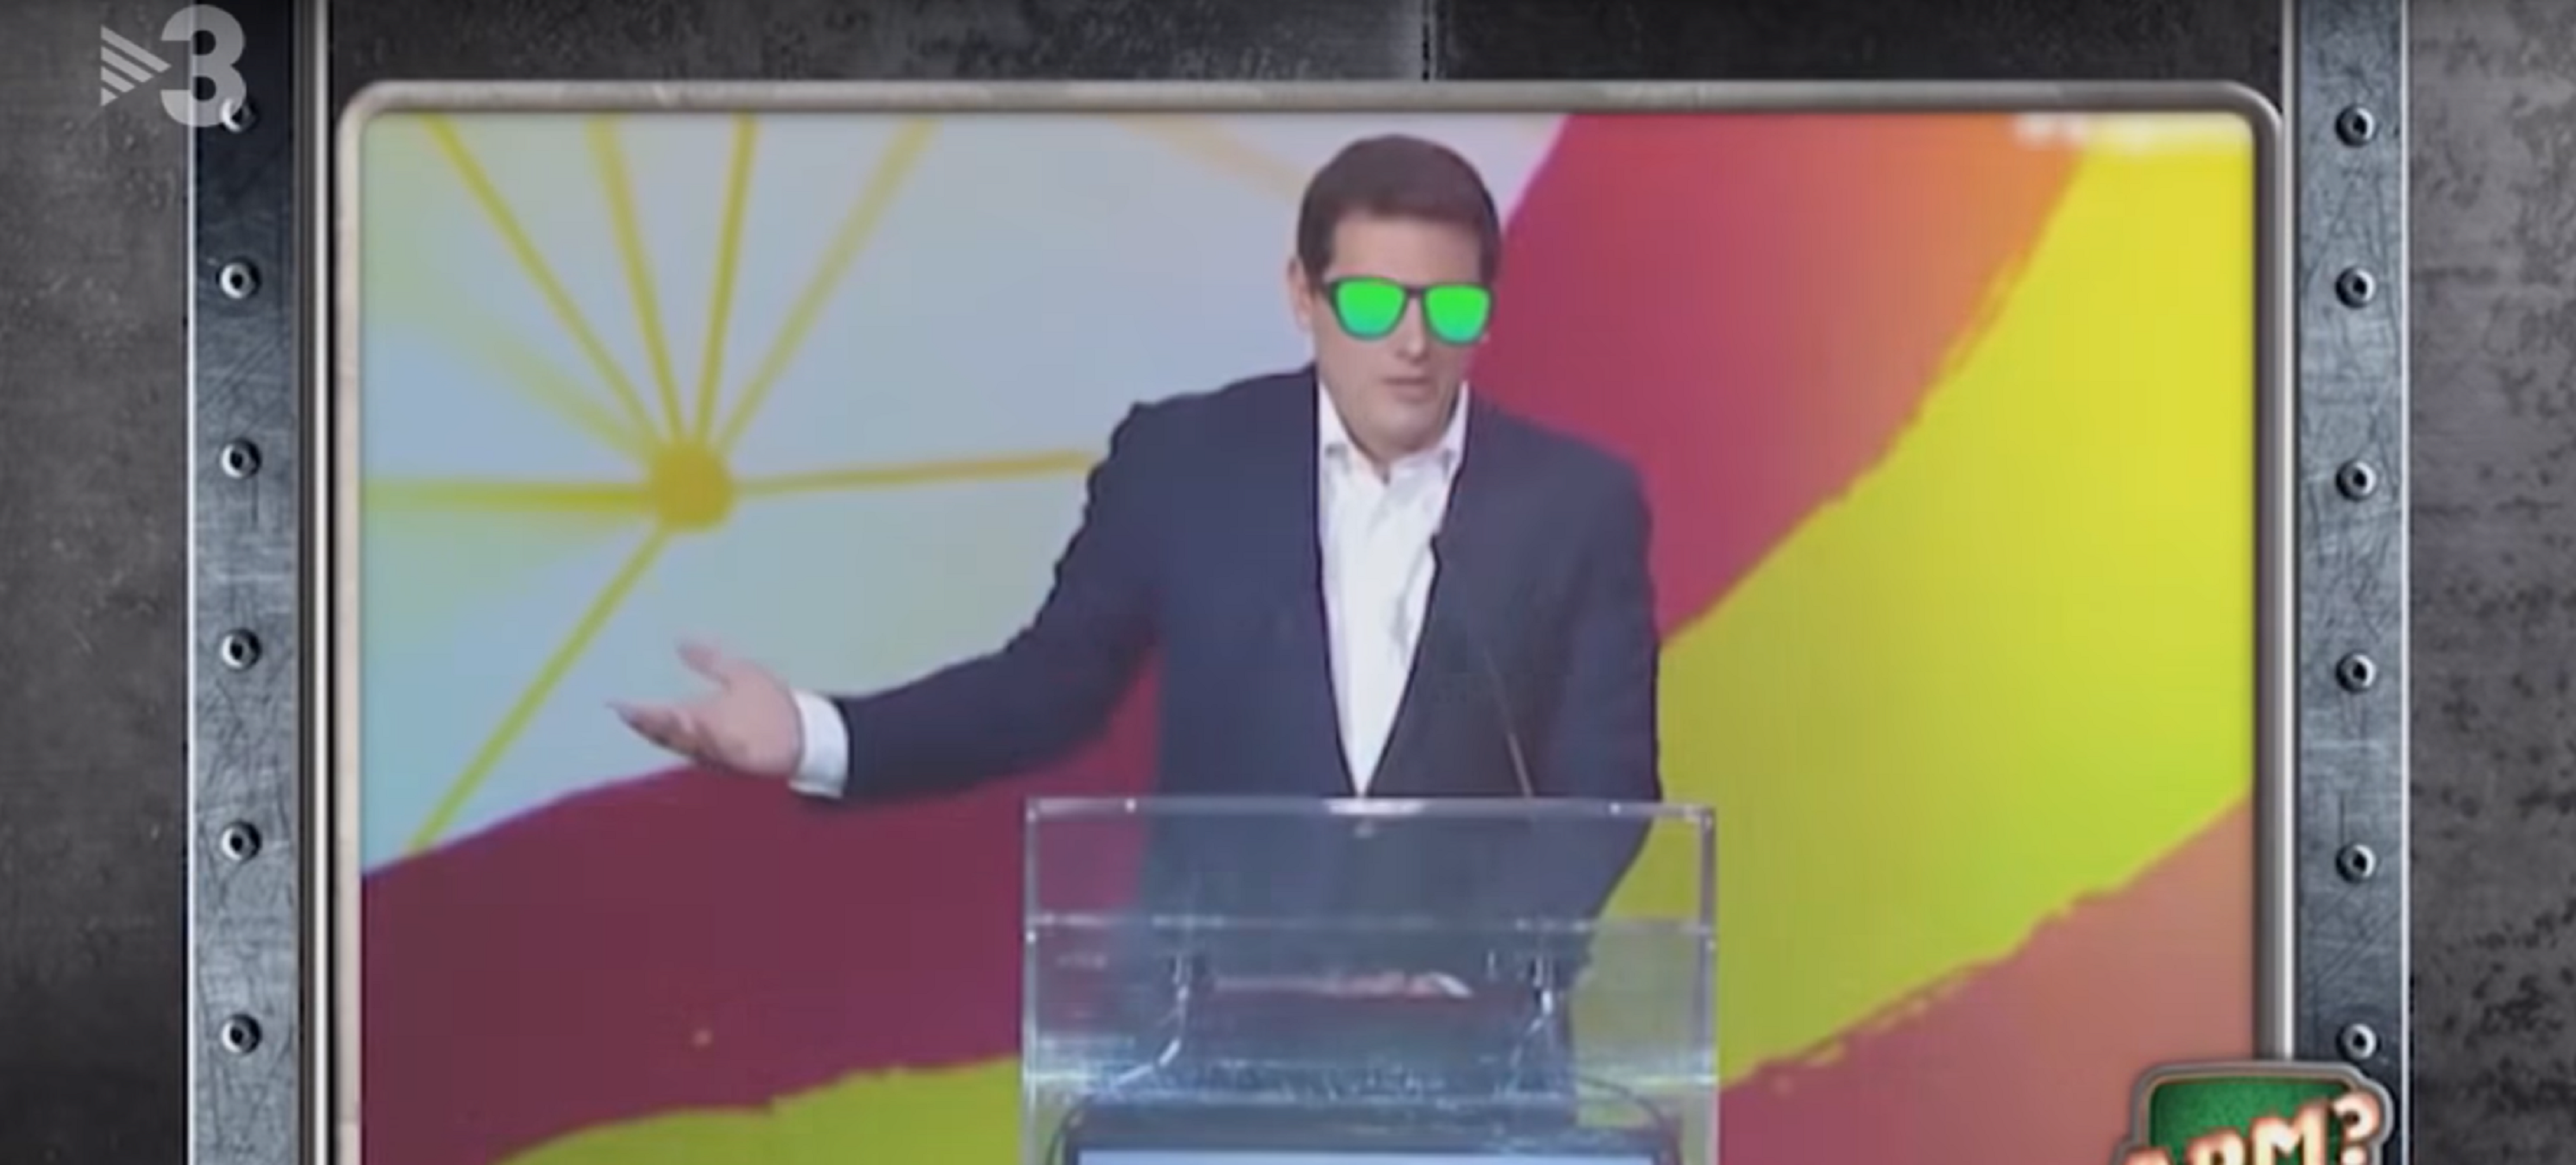 TV3 se ríe de Rivera, le hace un rap y lidera: "Yo, yo, yo veo españoles"